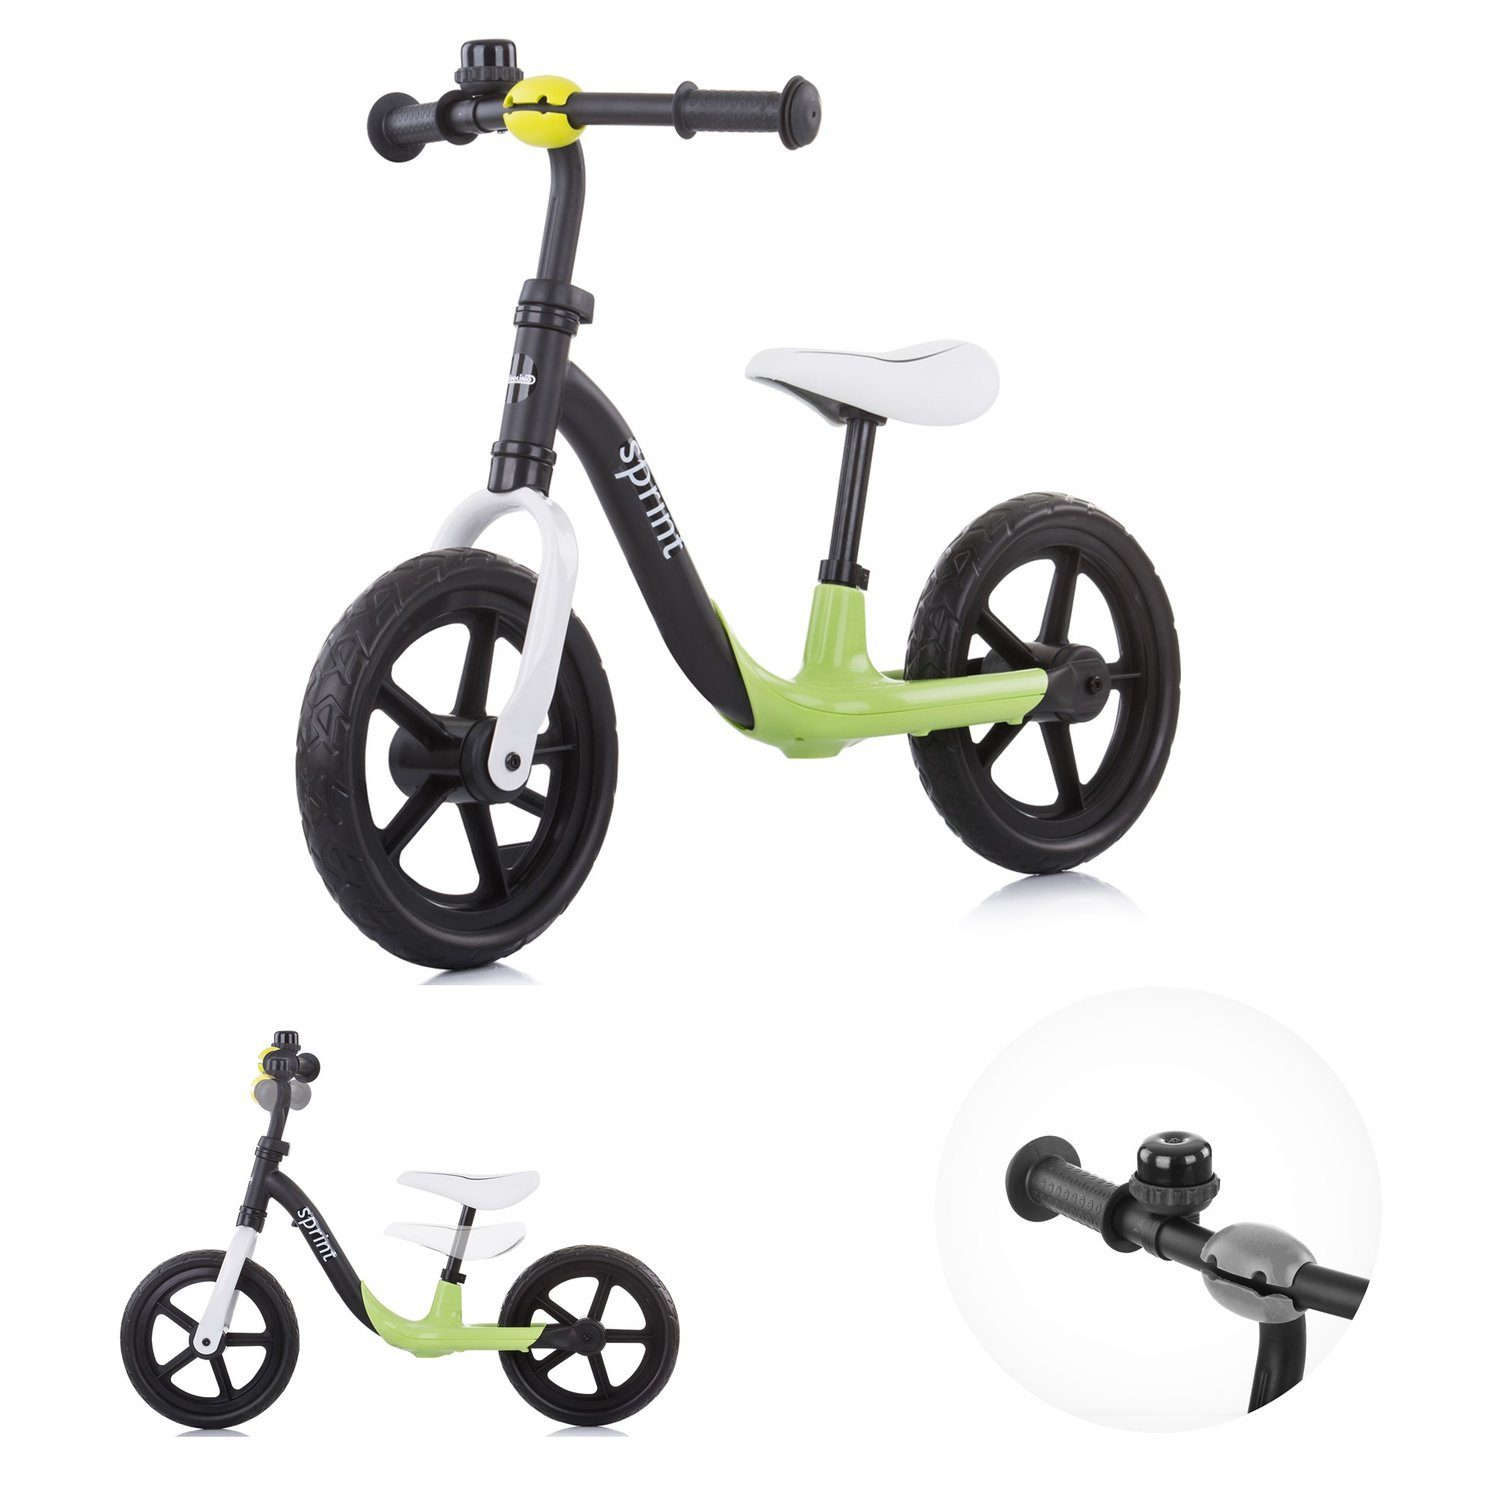 Chipolino Laufrad Laufrad Sprint 12 Zoll (30,48 cm) Zoll, 12 Zoll, Sitz und Lenker höhenverstellbar, Gummigriffe grün